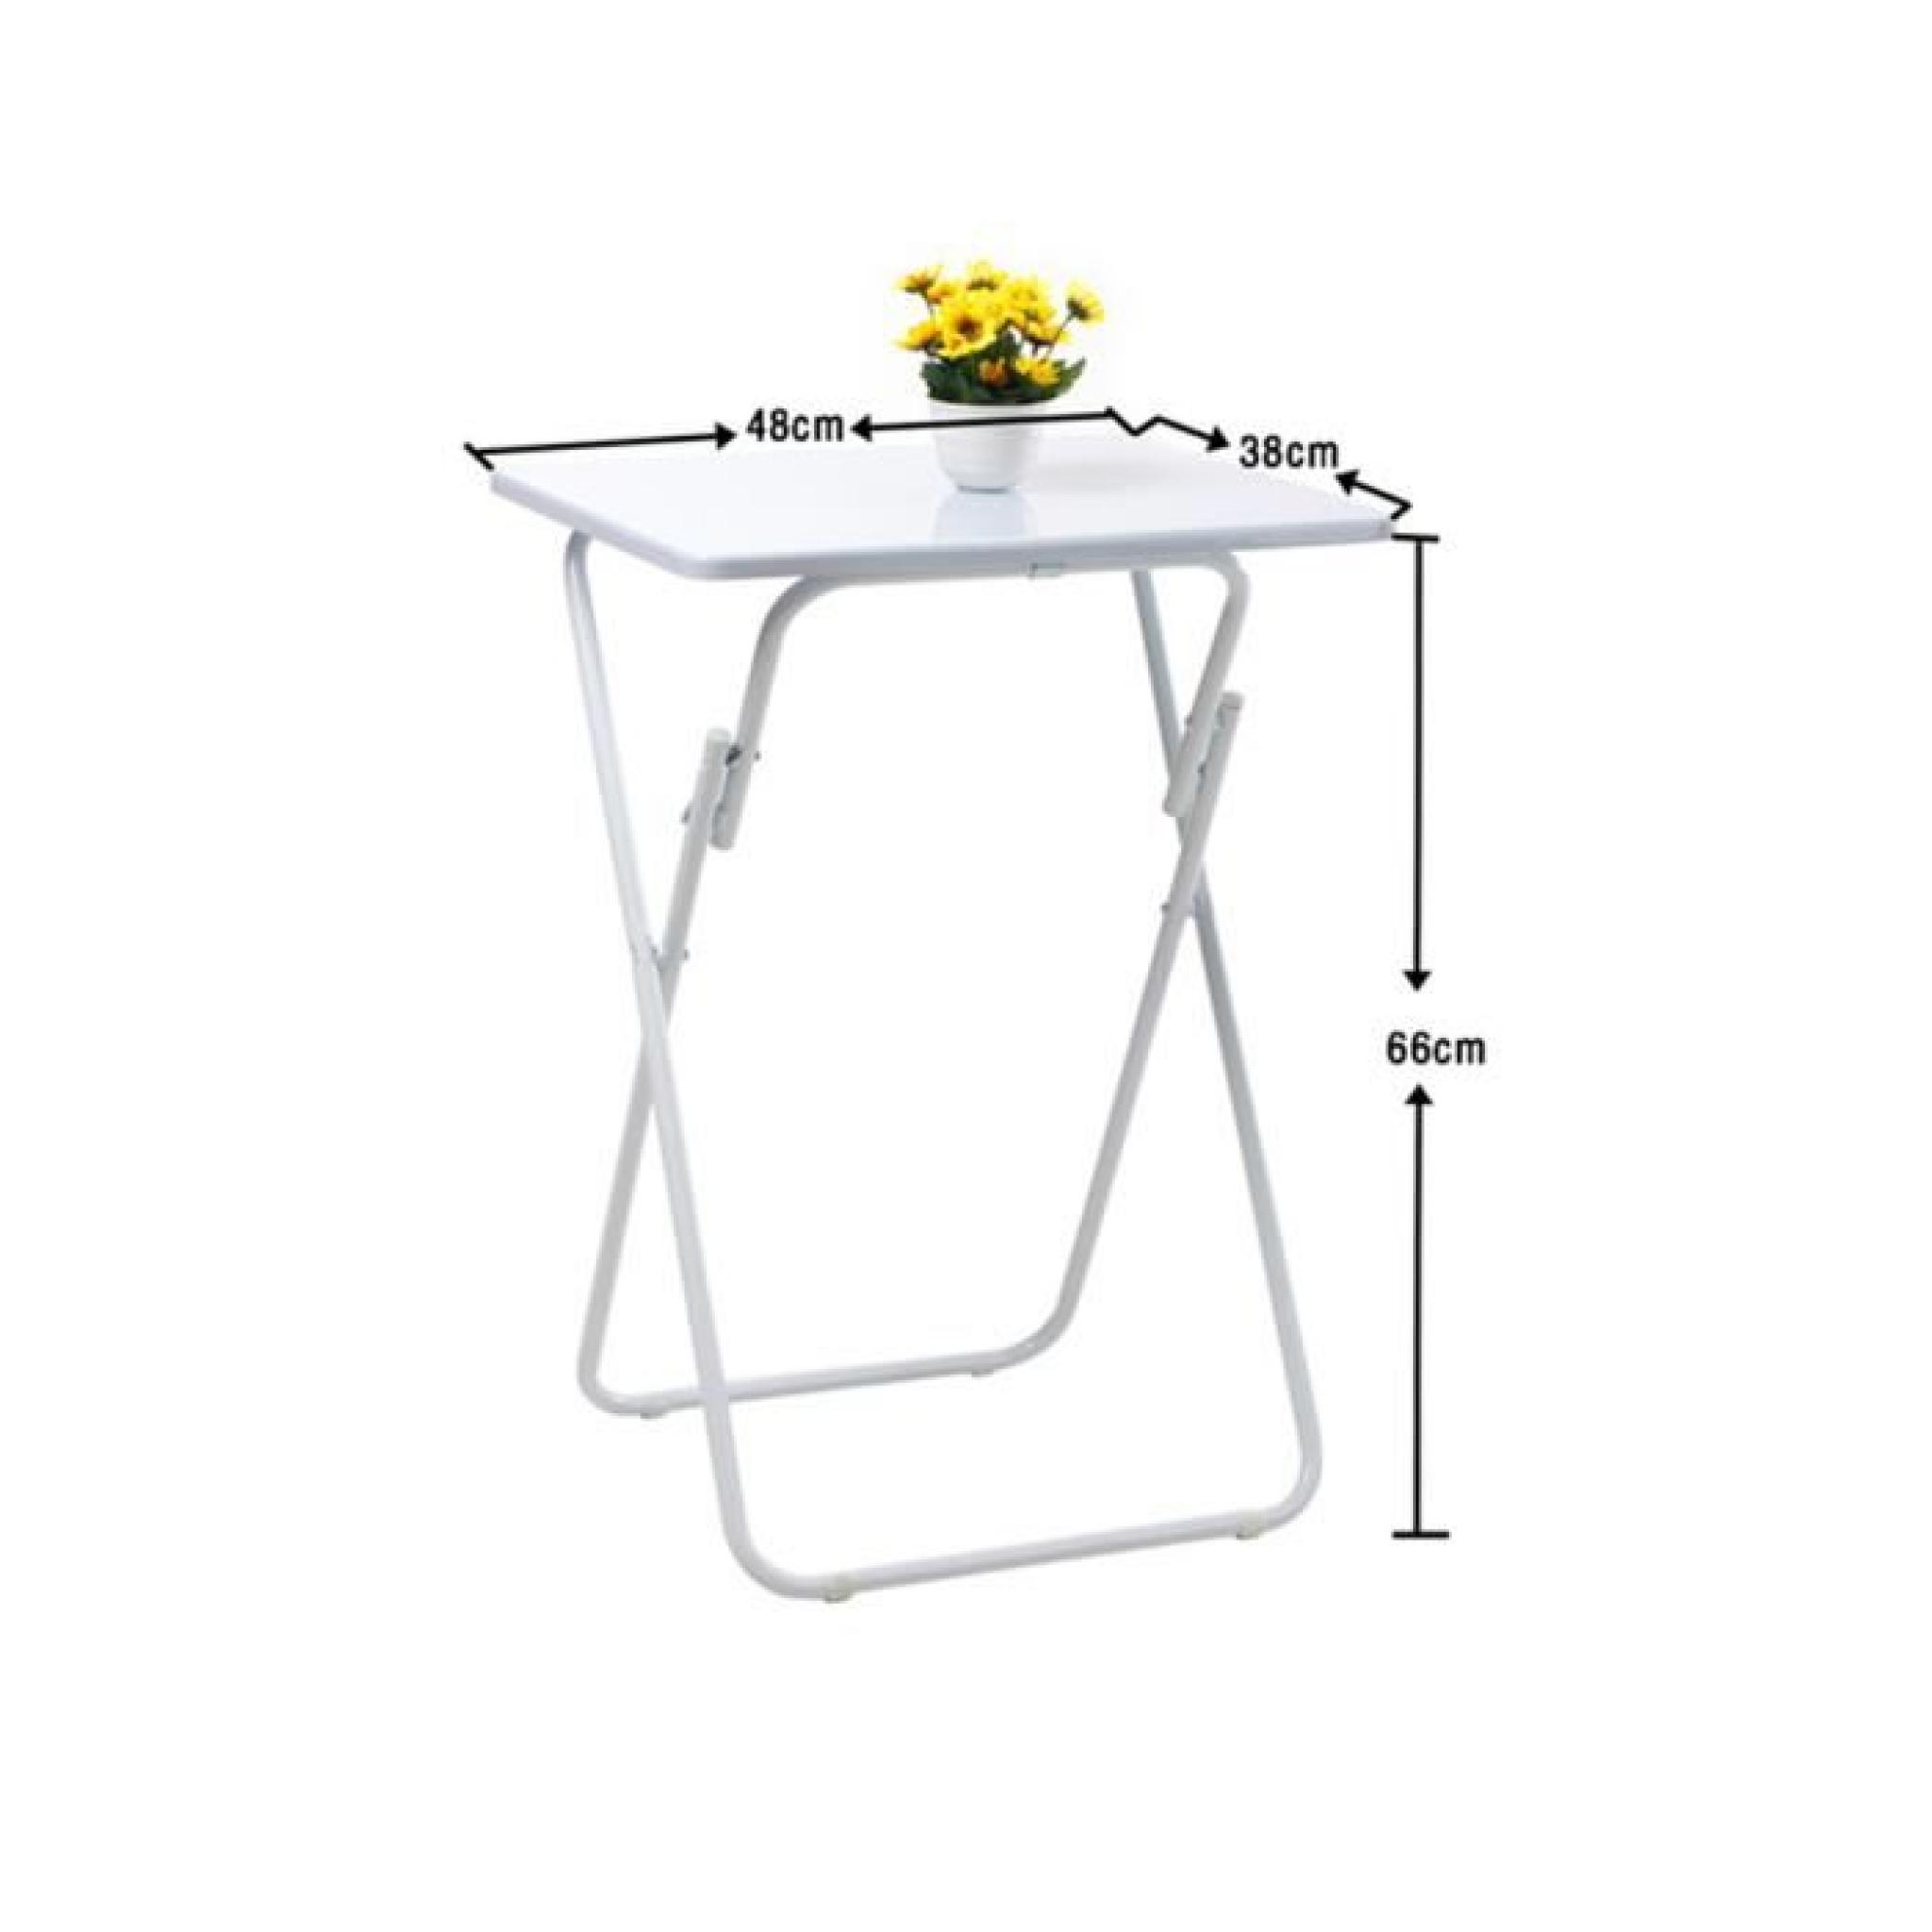 Multifonction Table d'appoint Pliable MDF Blanc 48cm x 38cm x 66cm pas cher